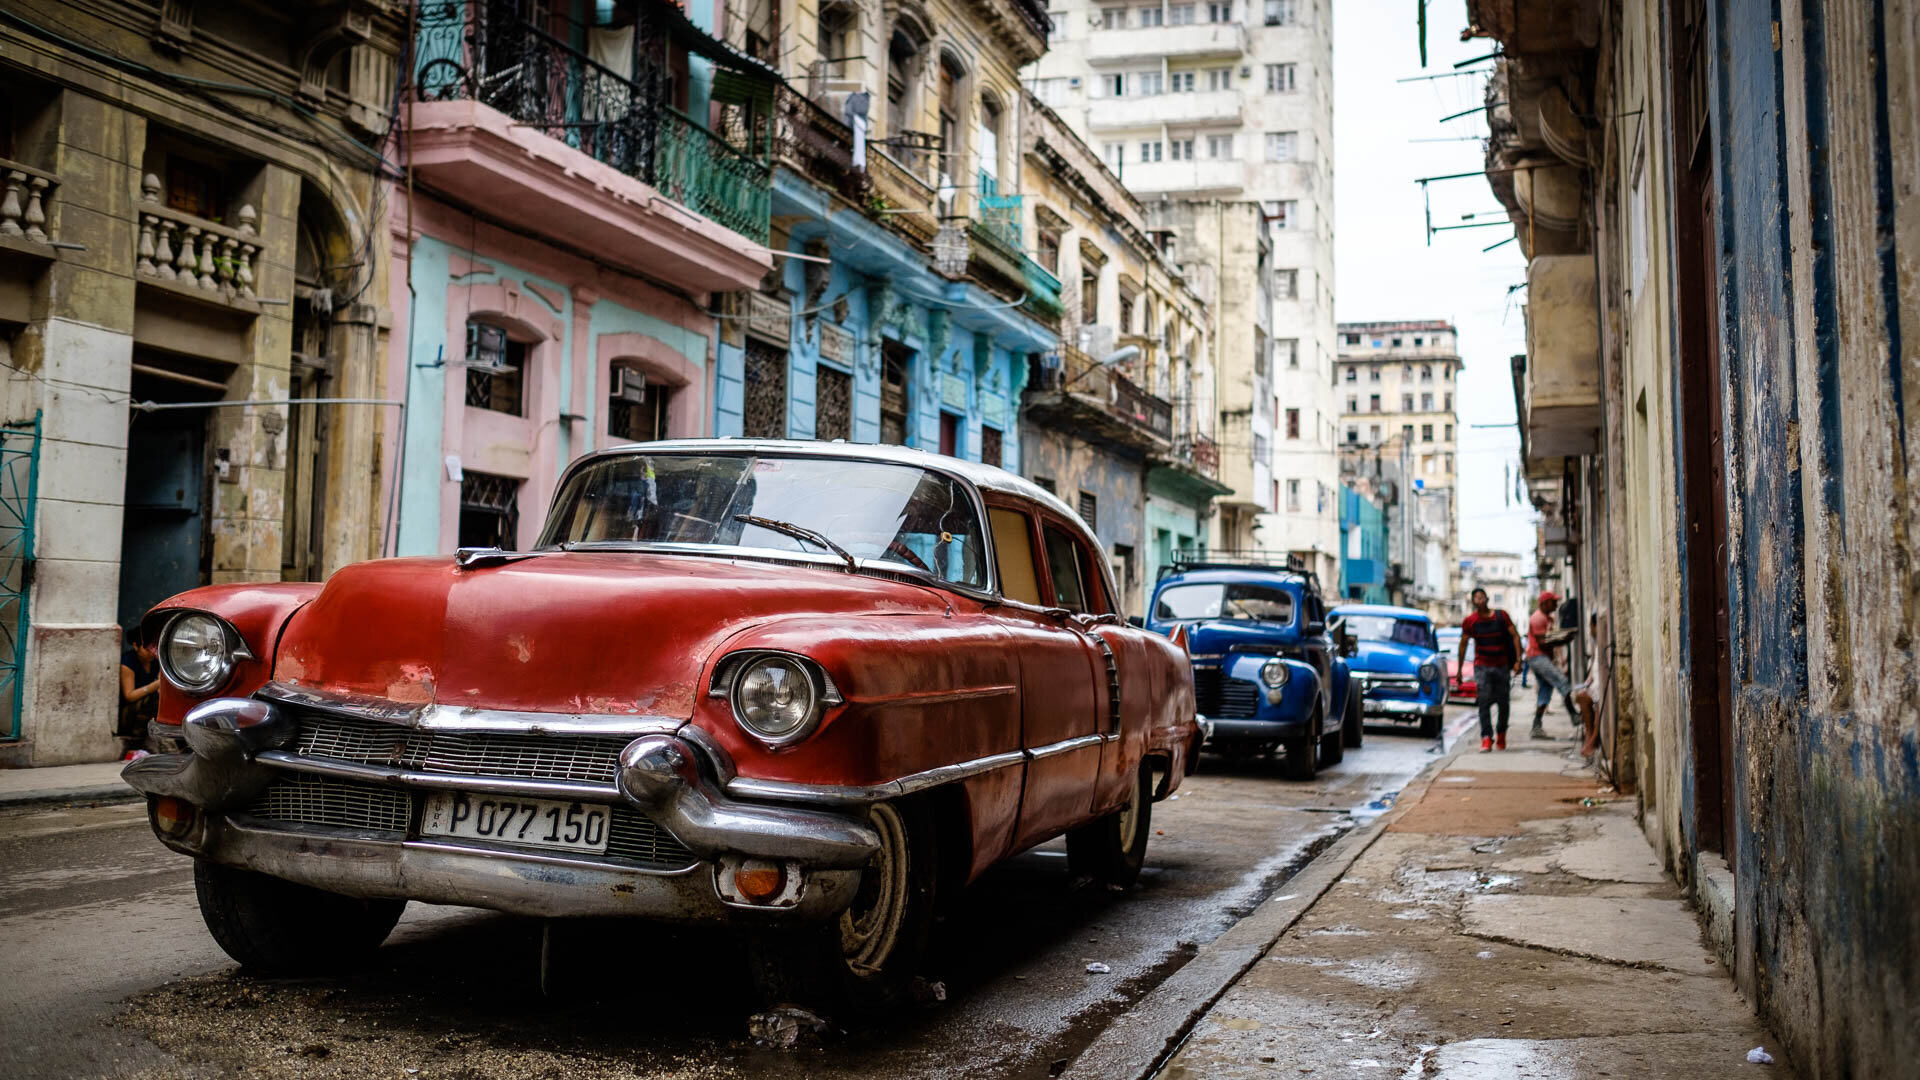 180427-Havana-78-1080.jpg